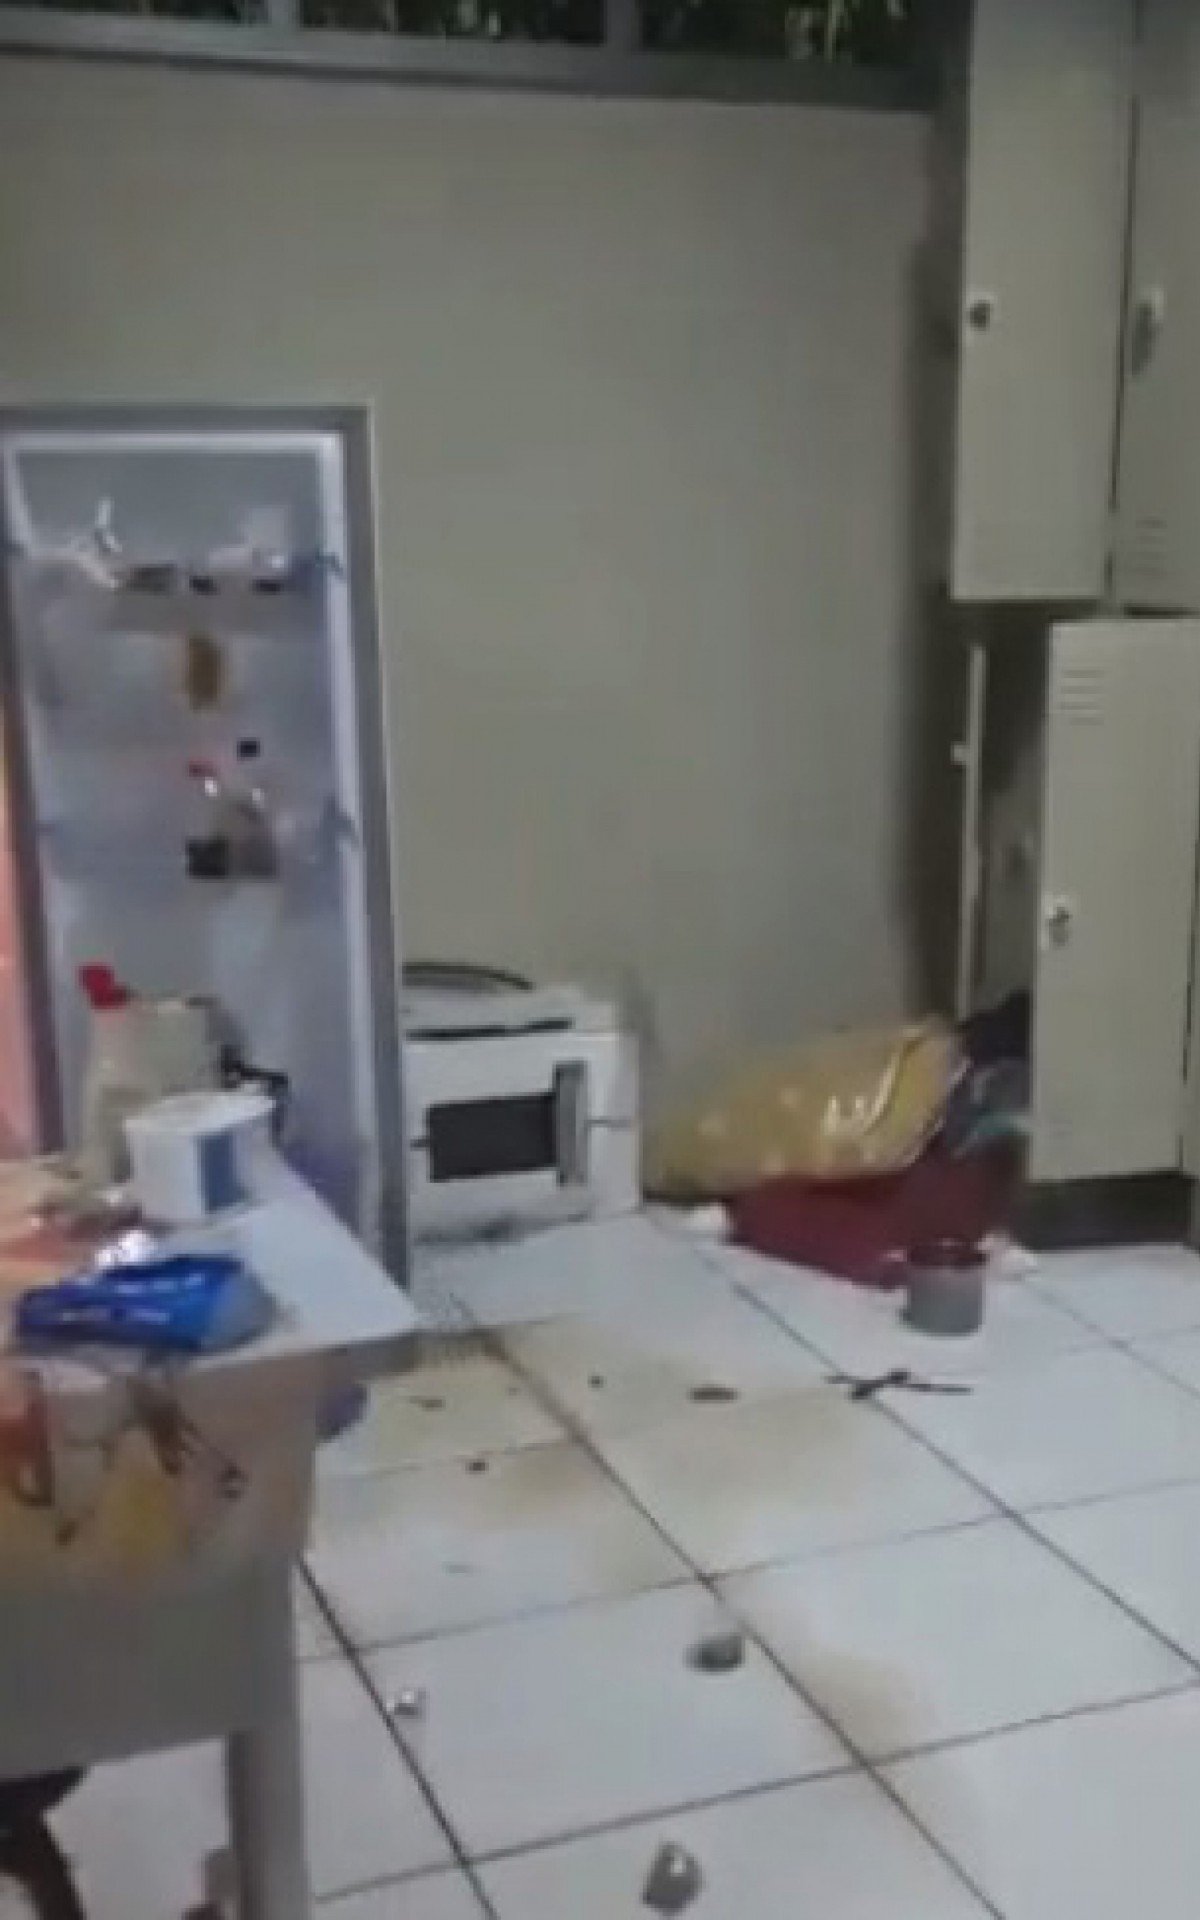 Cozinha ficou completamente bagunçada após invasão - Reprodução